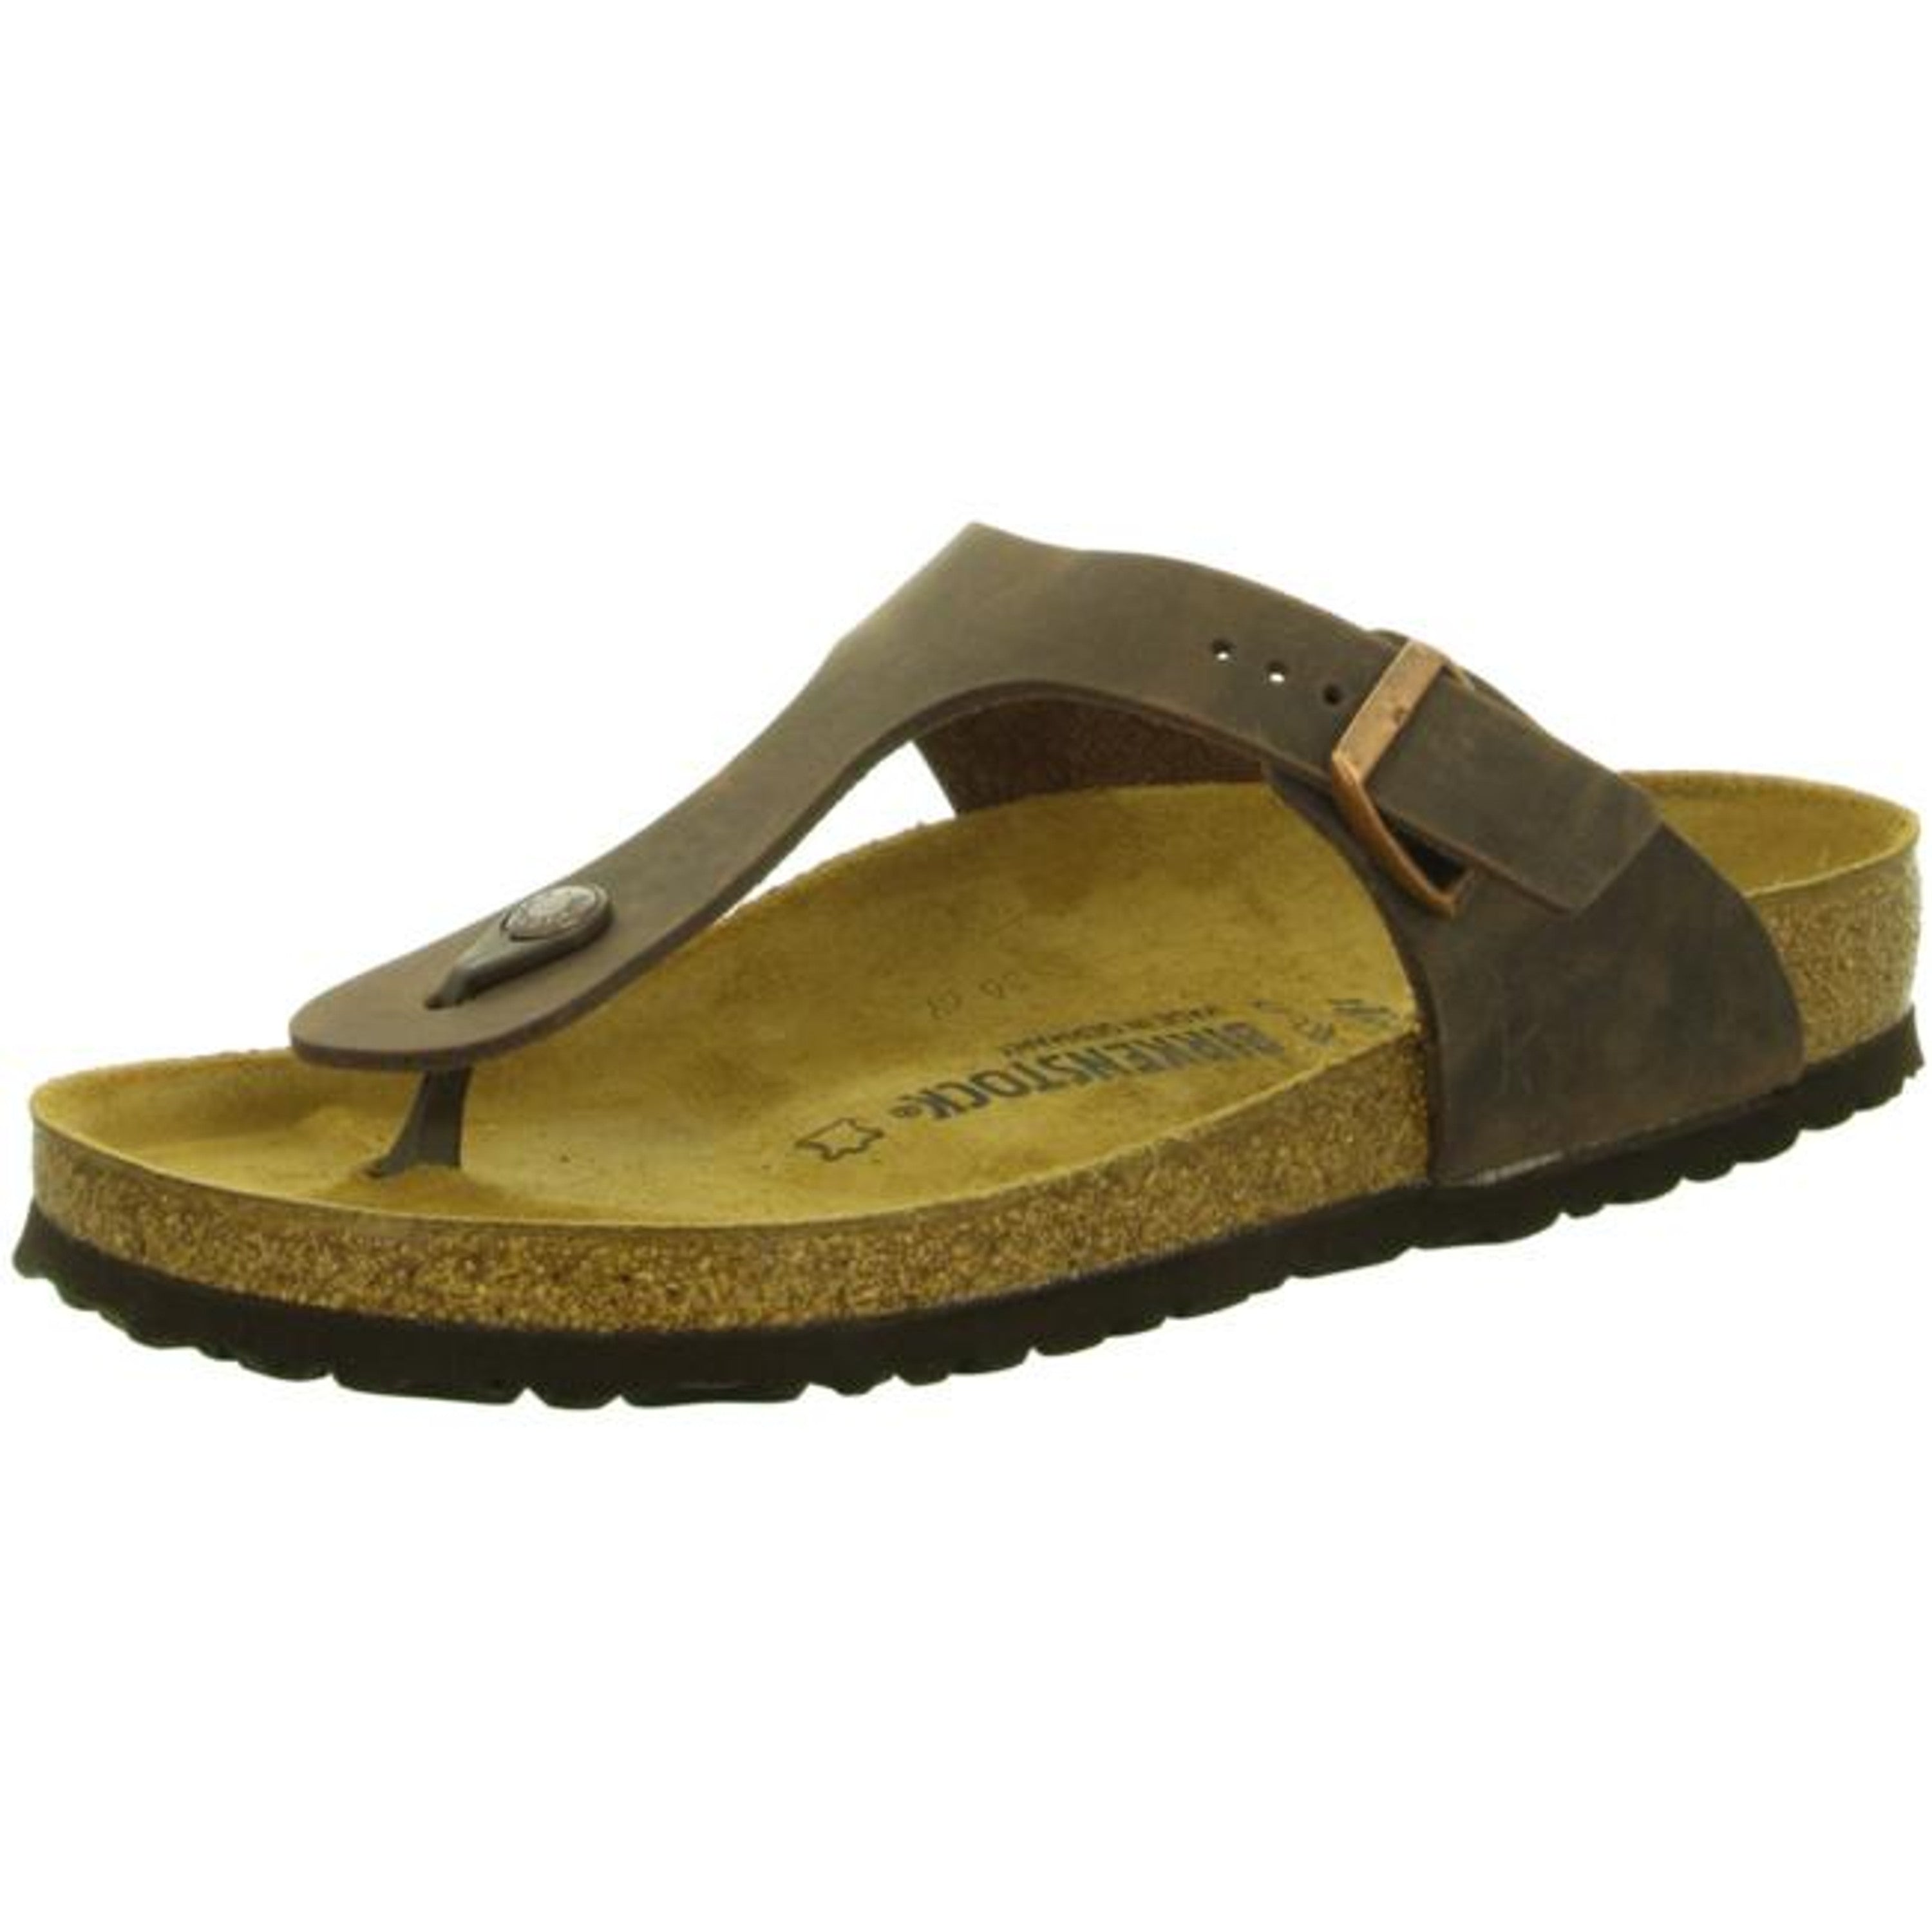 Birkenstock Gizeh Habana Leather Sandals Slides Thongs Flip-Flops regular - Bartel-Shop